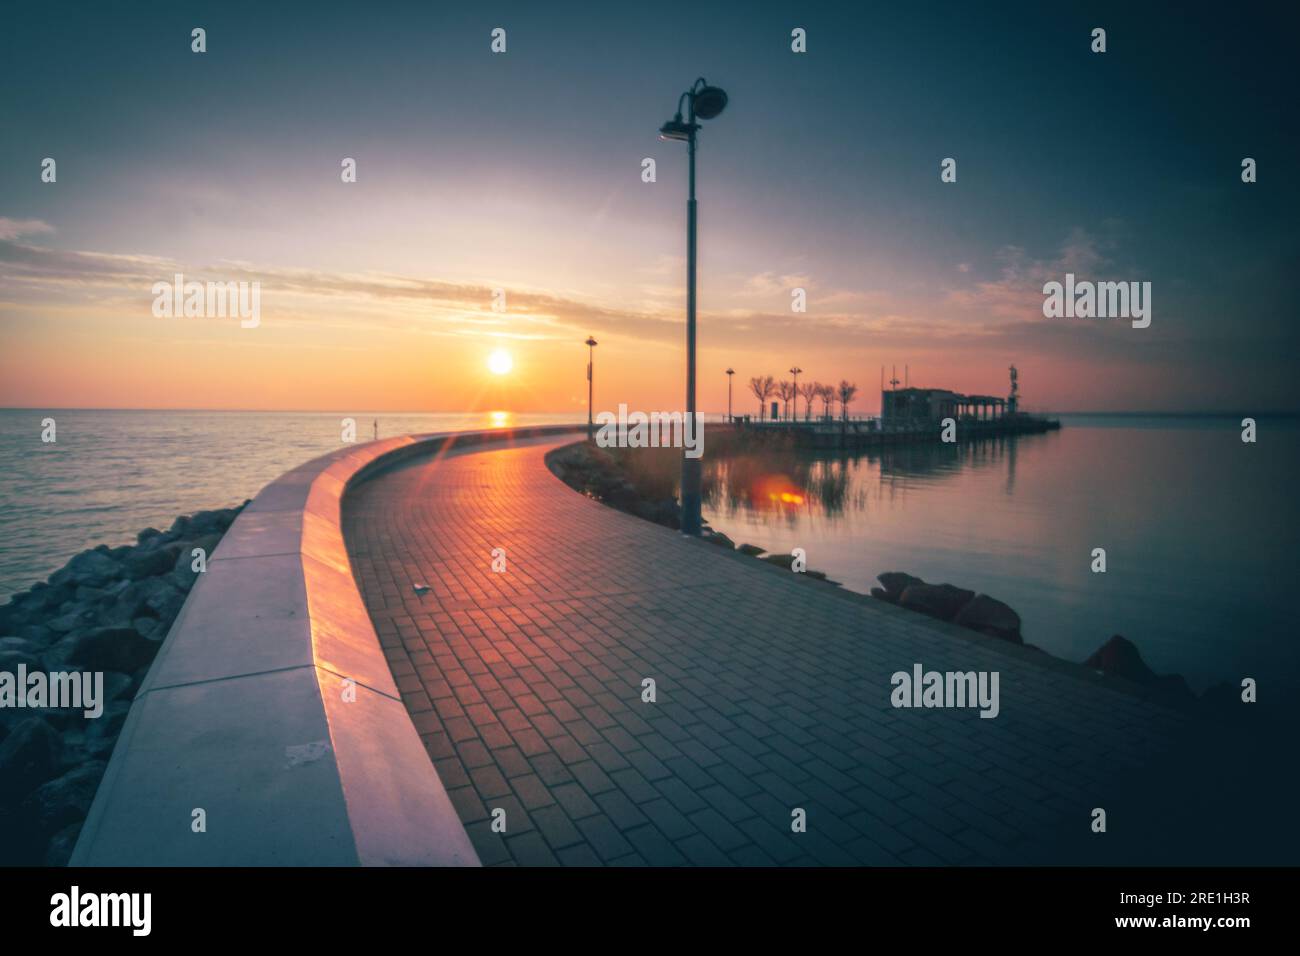 Encantadora salida del sol en el lago Balaton, Hungría - Captura de la belleza escénica Foto de stock